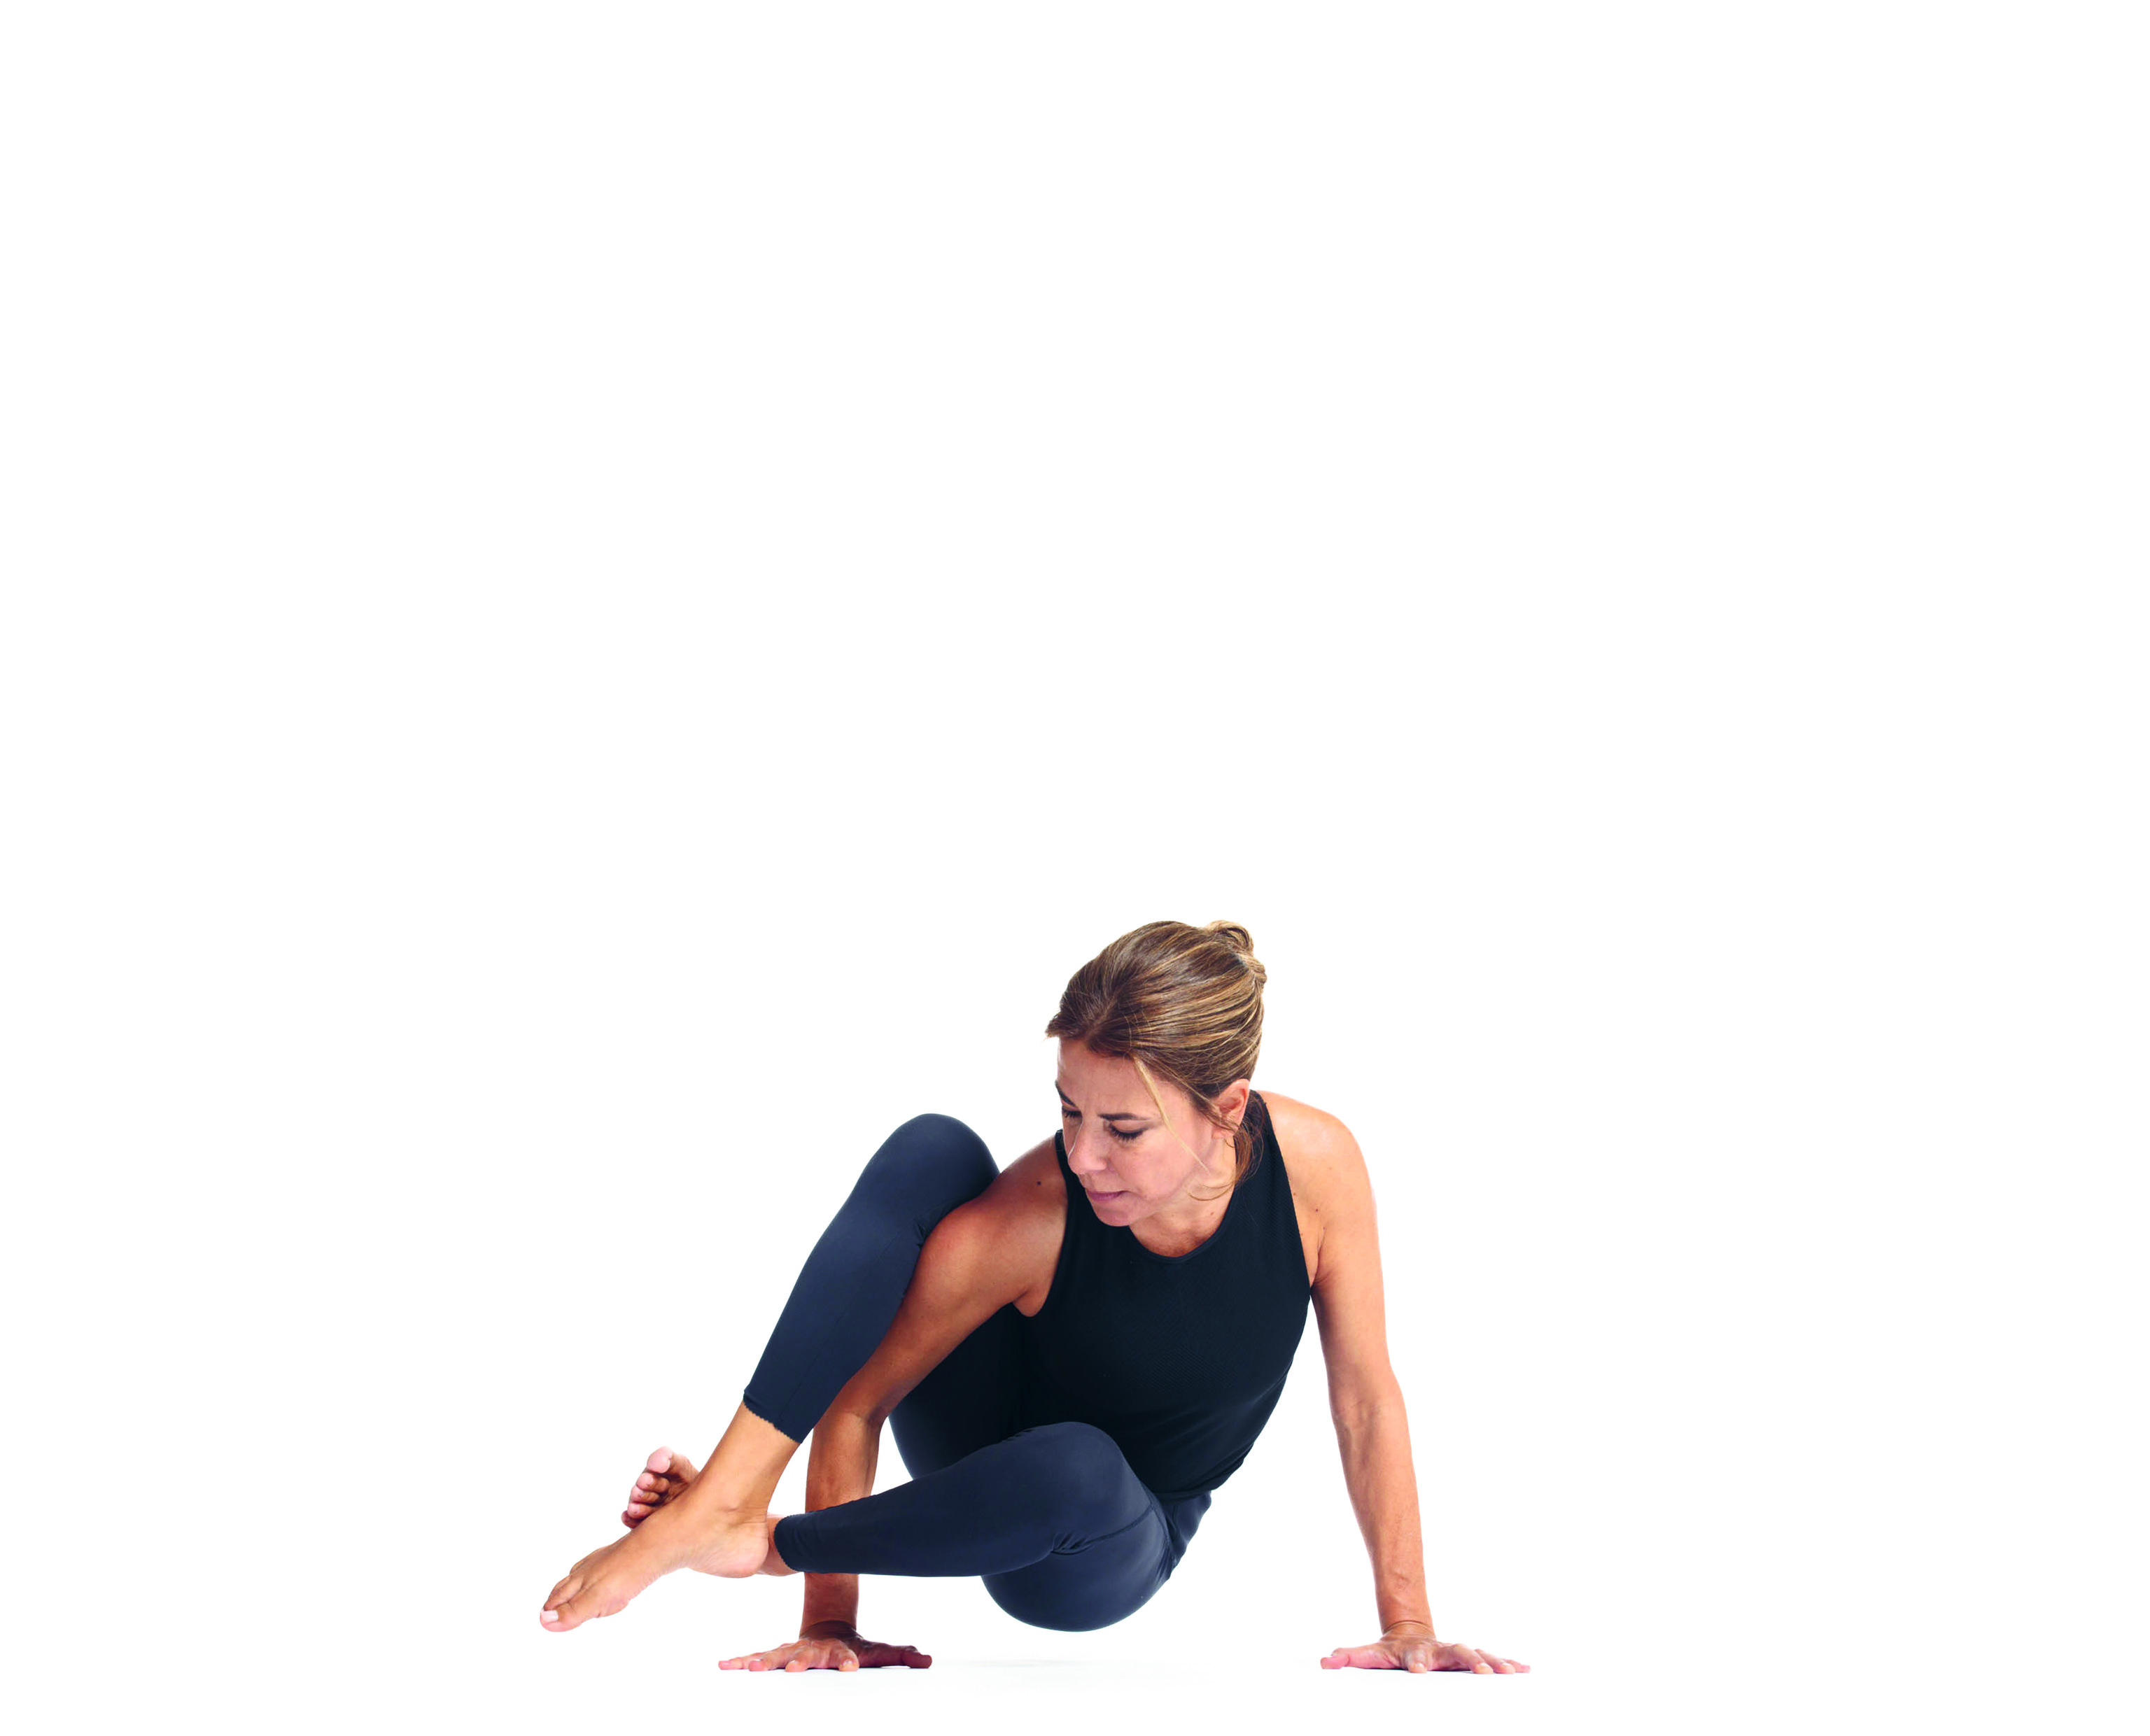 Una de las 'asanas' imposibles de la yogui, que confiesa ser autodidacta y adorar la fuerza.